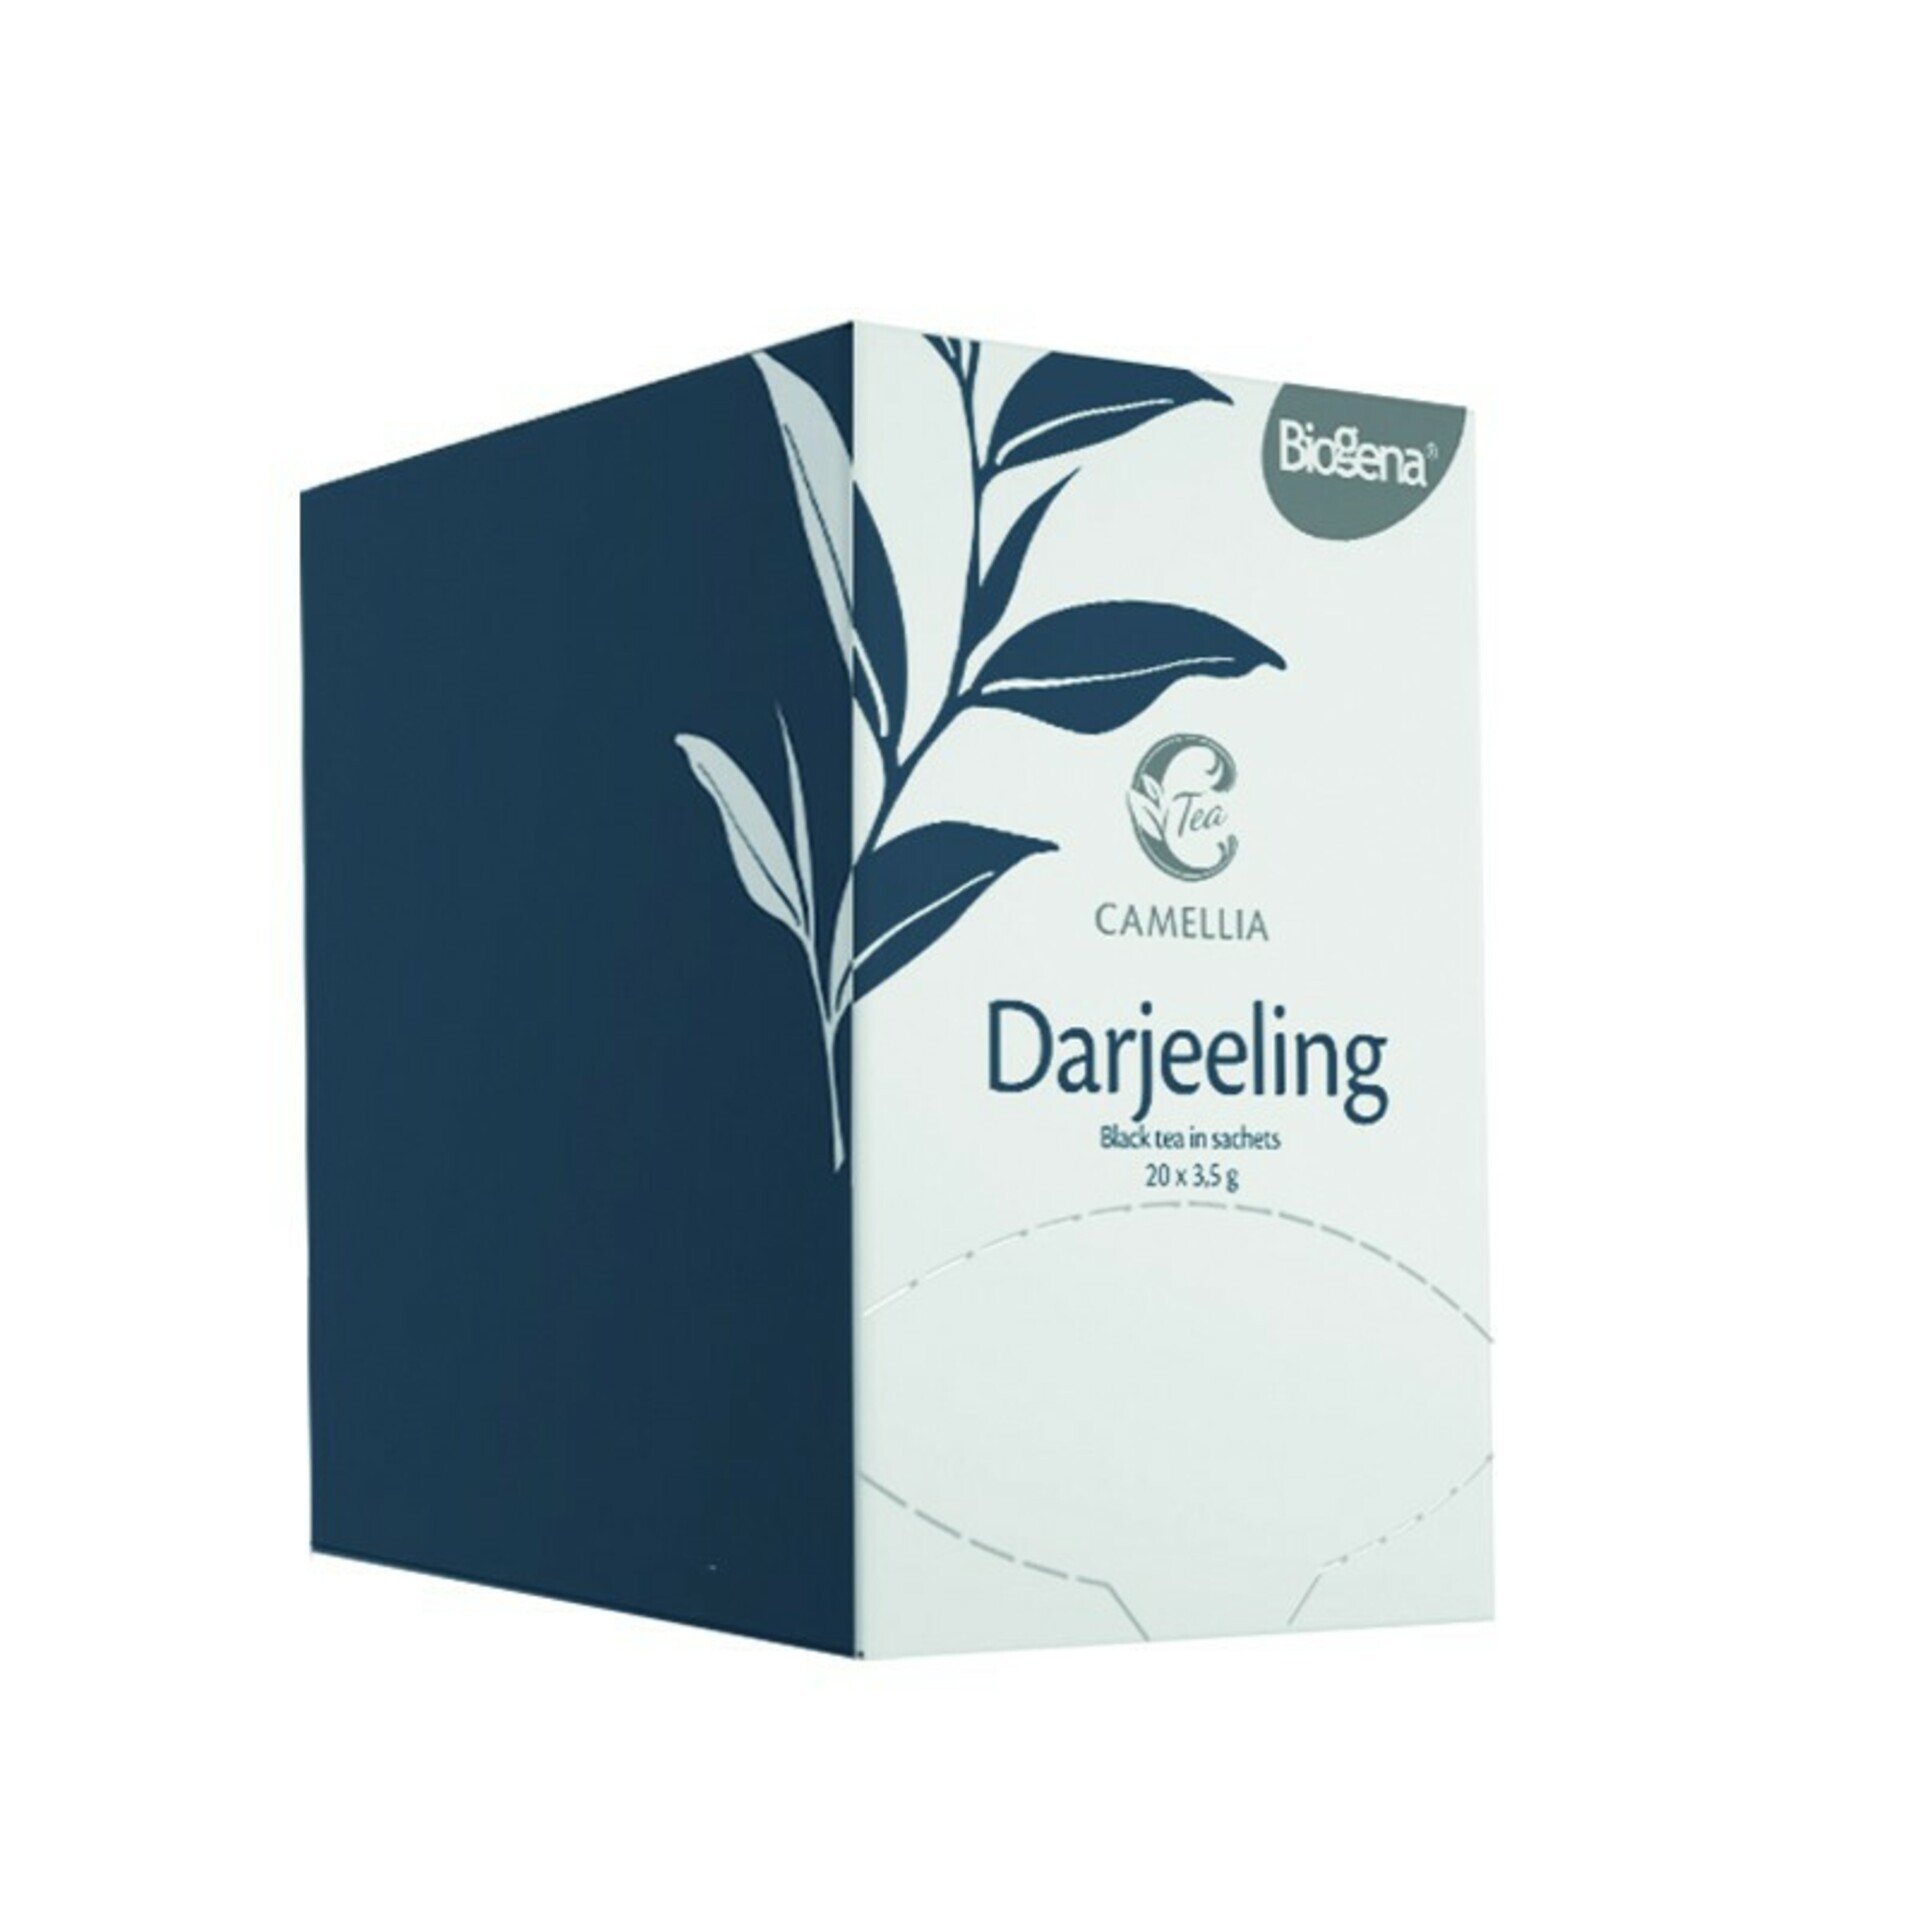 Biogena Camellia Darjeeling 20x3